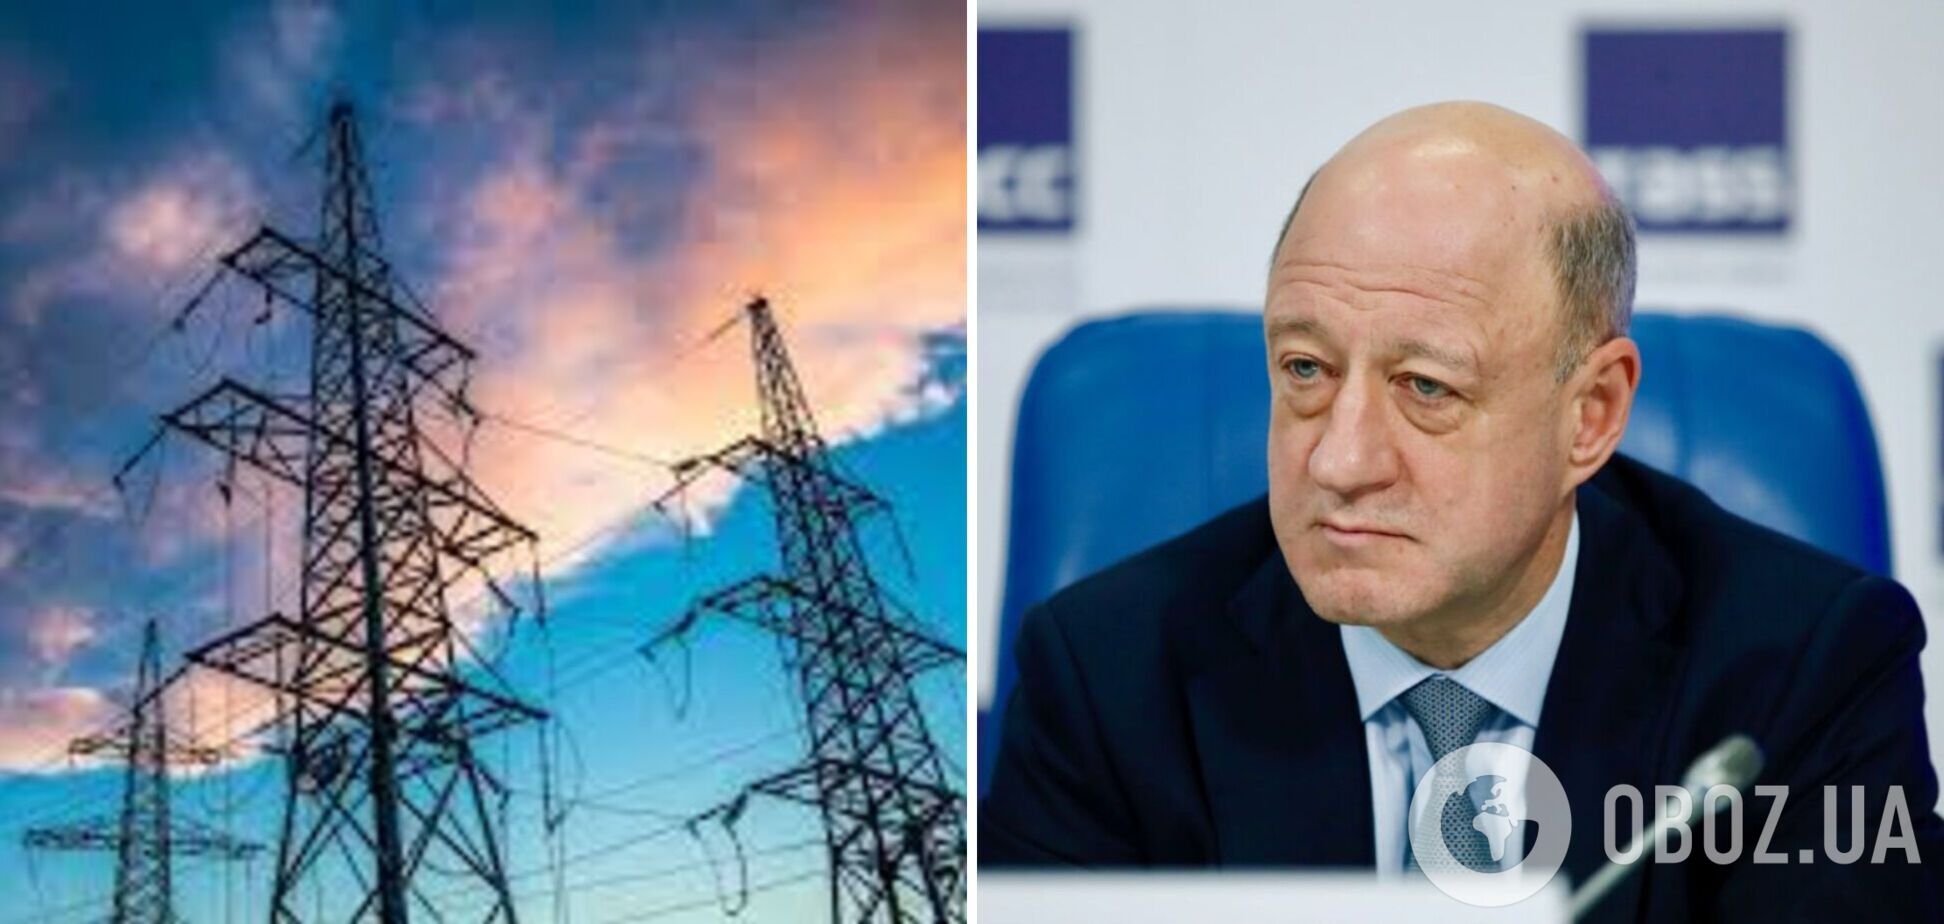 Заместитель председателя Госдумы РФ Бабаков, которому сообщили о подозрении, является собственником ряда энергокомпаний в Украине – СБУ